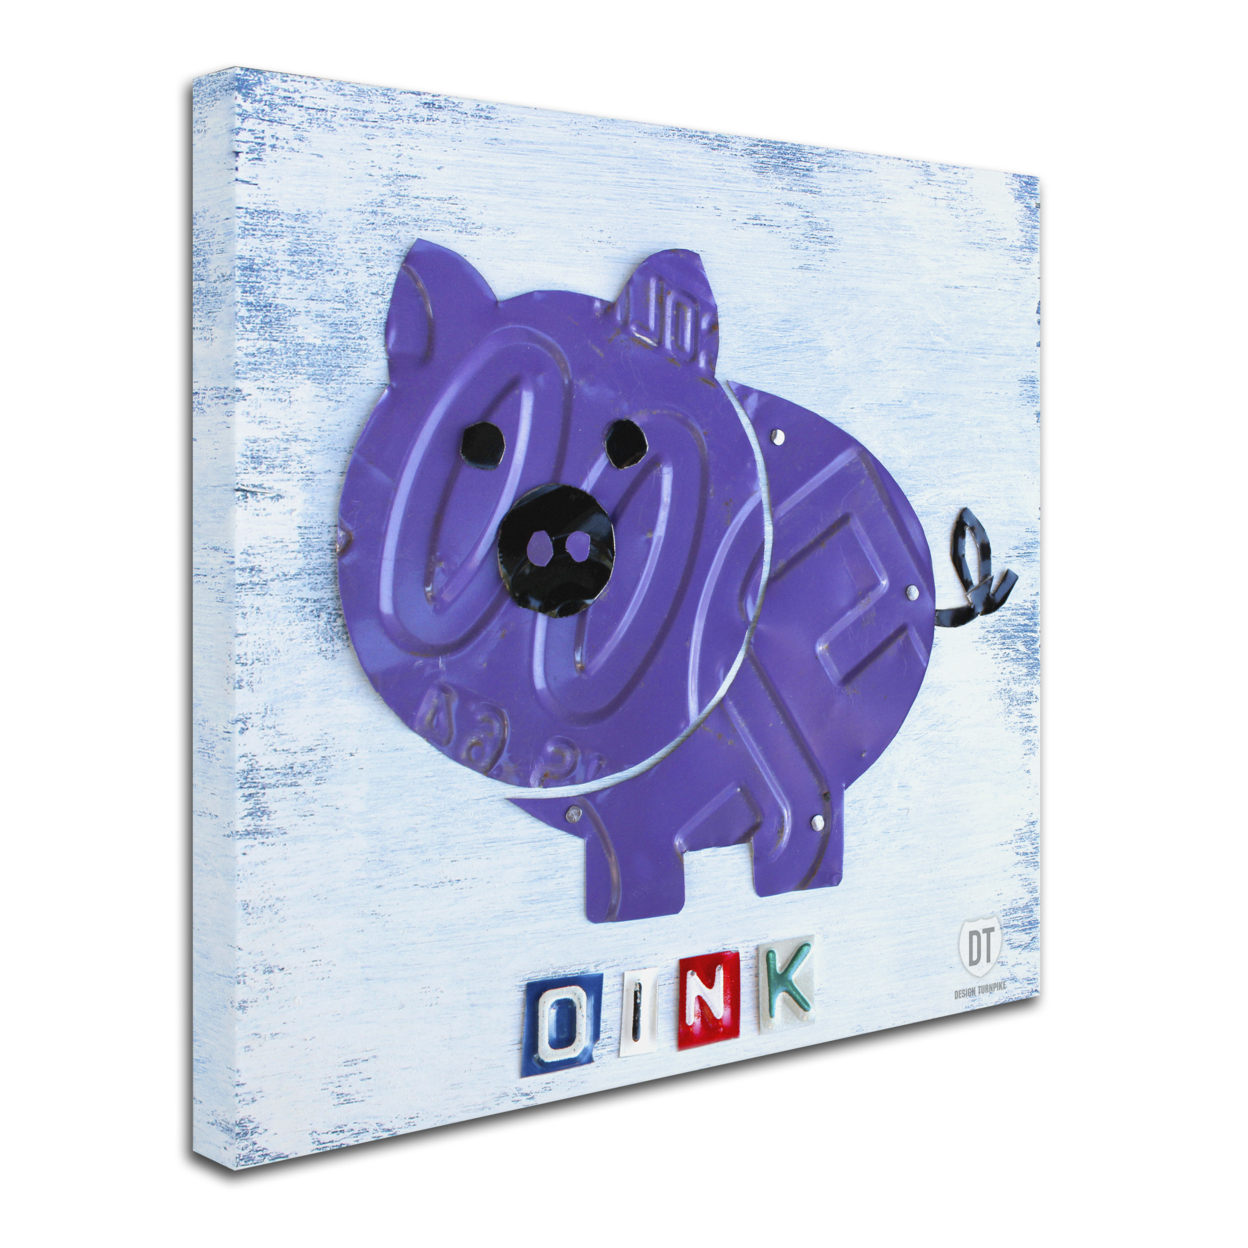 Design Turnpike 'Oink The Pig' Huge Canvas Art 35 X 35